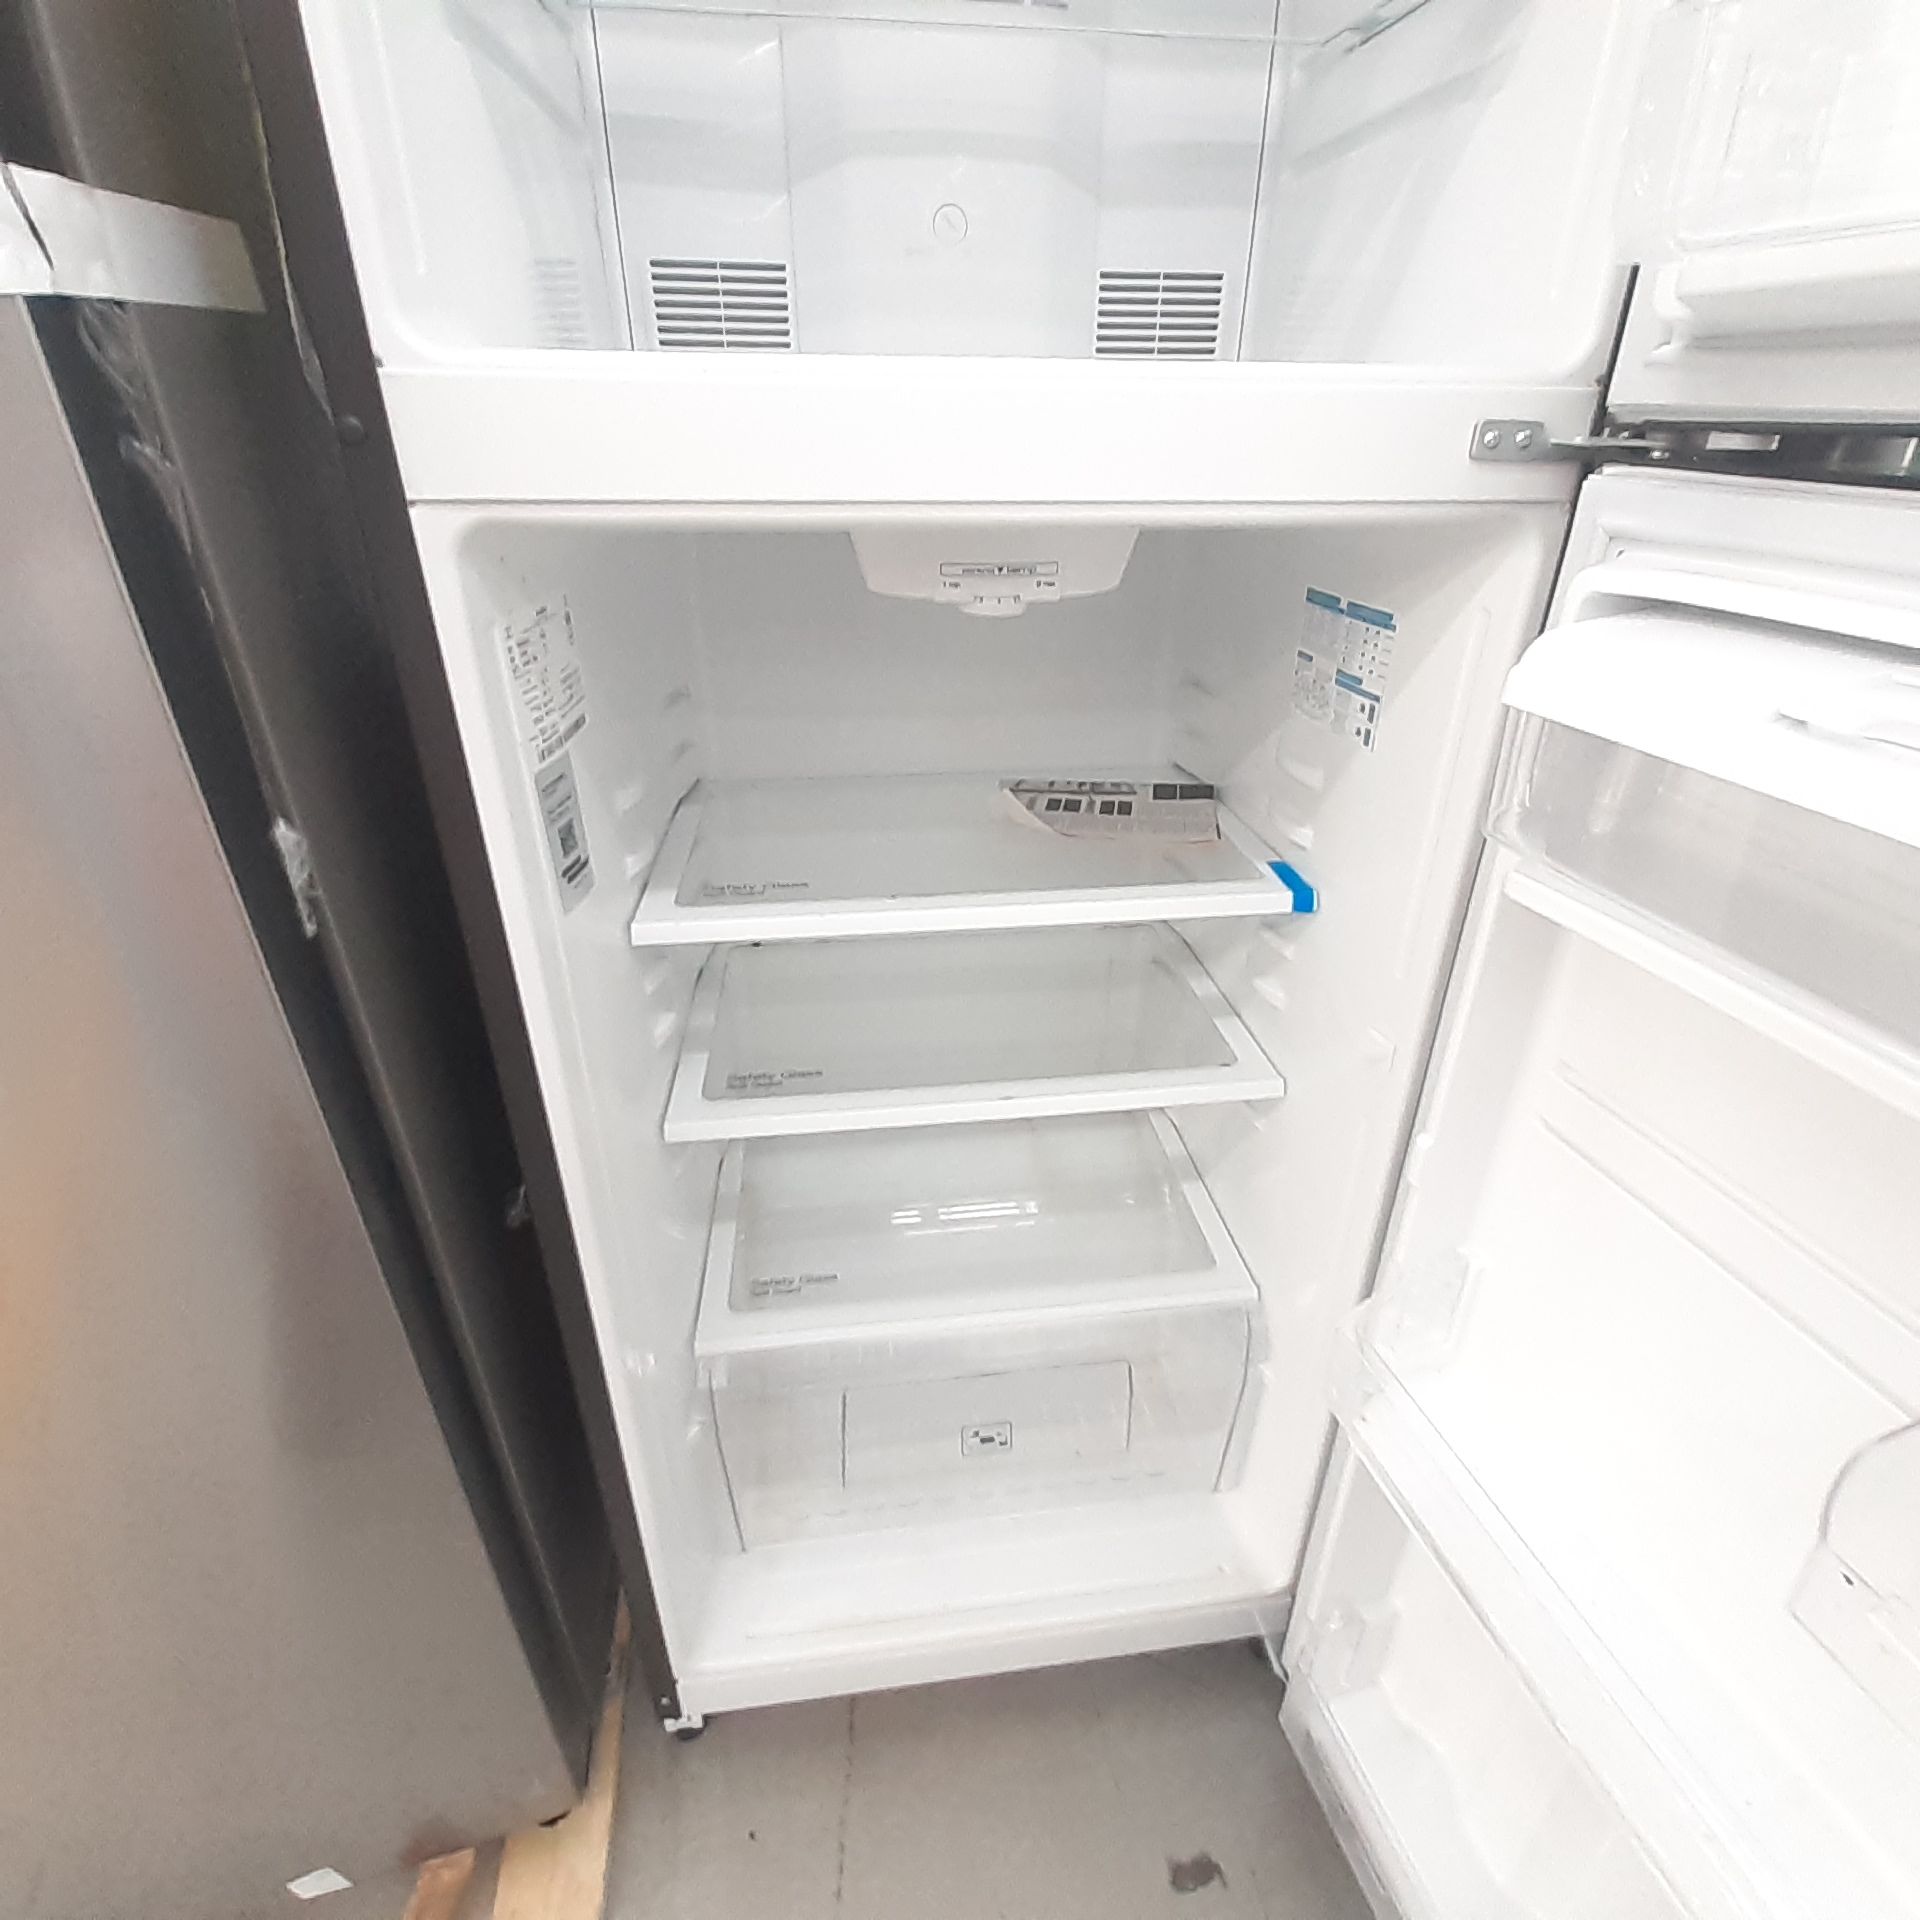 Lote De 3 Refrigeradores: 1 Refrigerador Marca Whirlpool, 1 Refrigerador Marca Mabe, 1 Refrigerador - Image 16 of 22